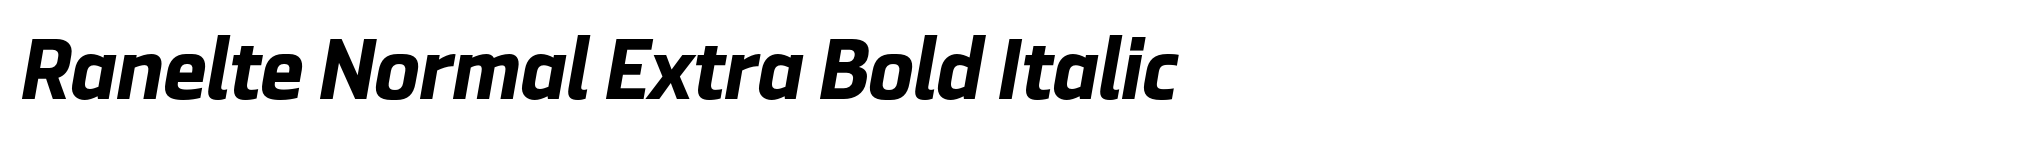 Ranelte Normal Extra Bold Italic image